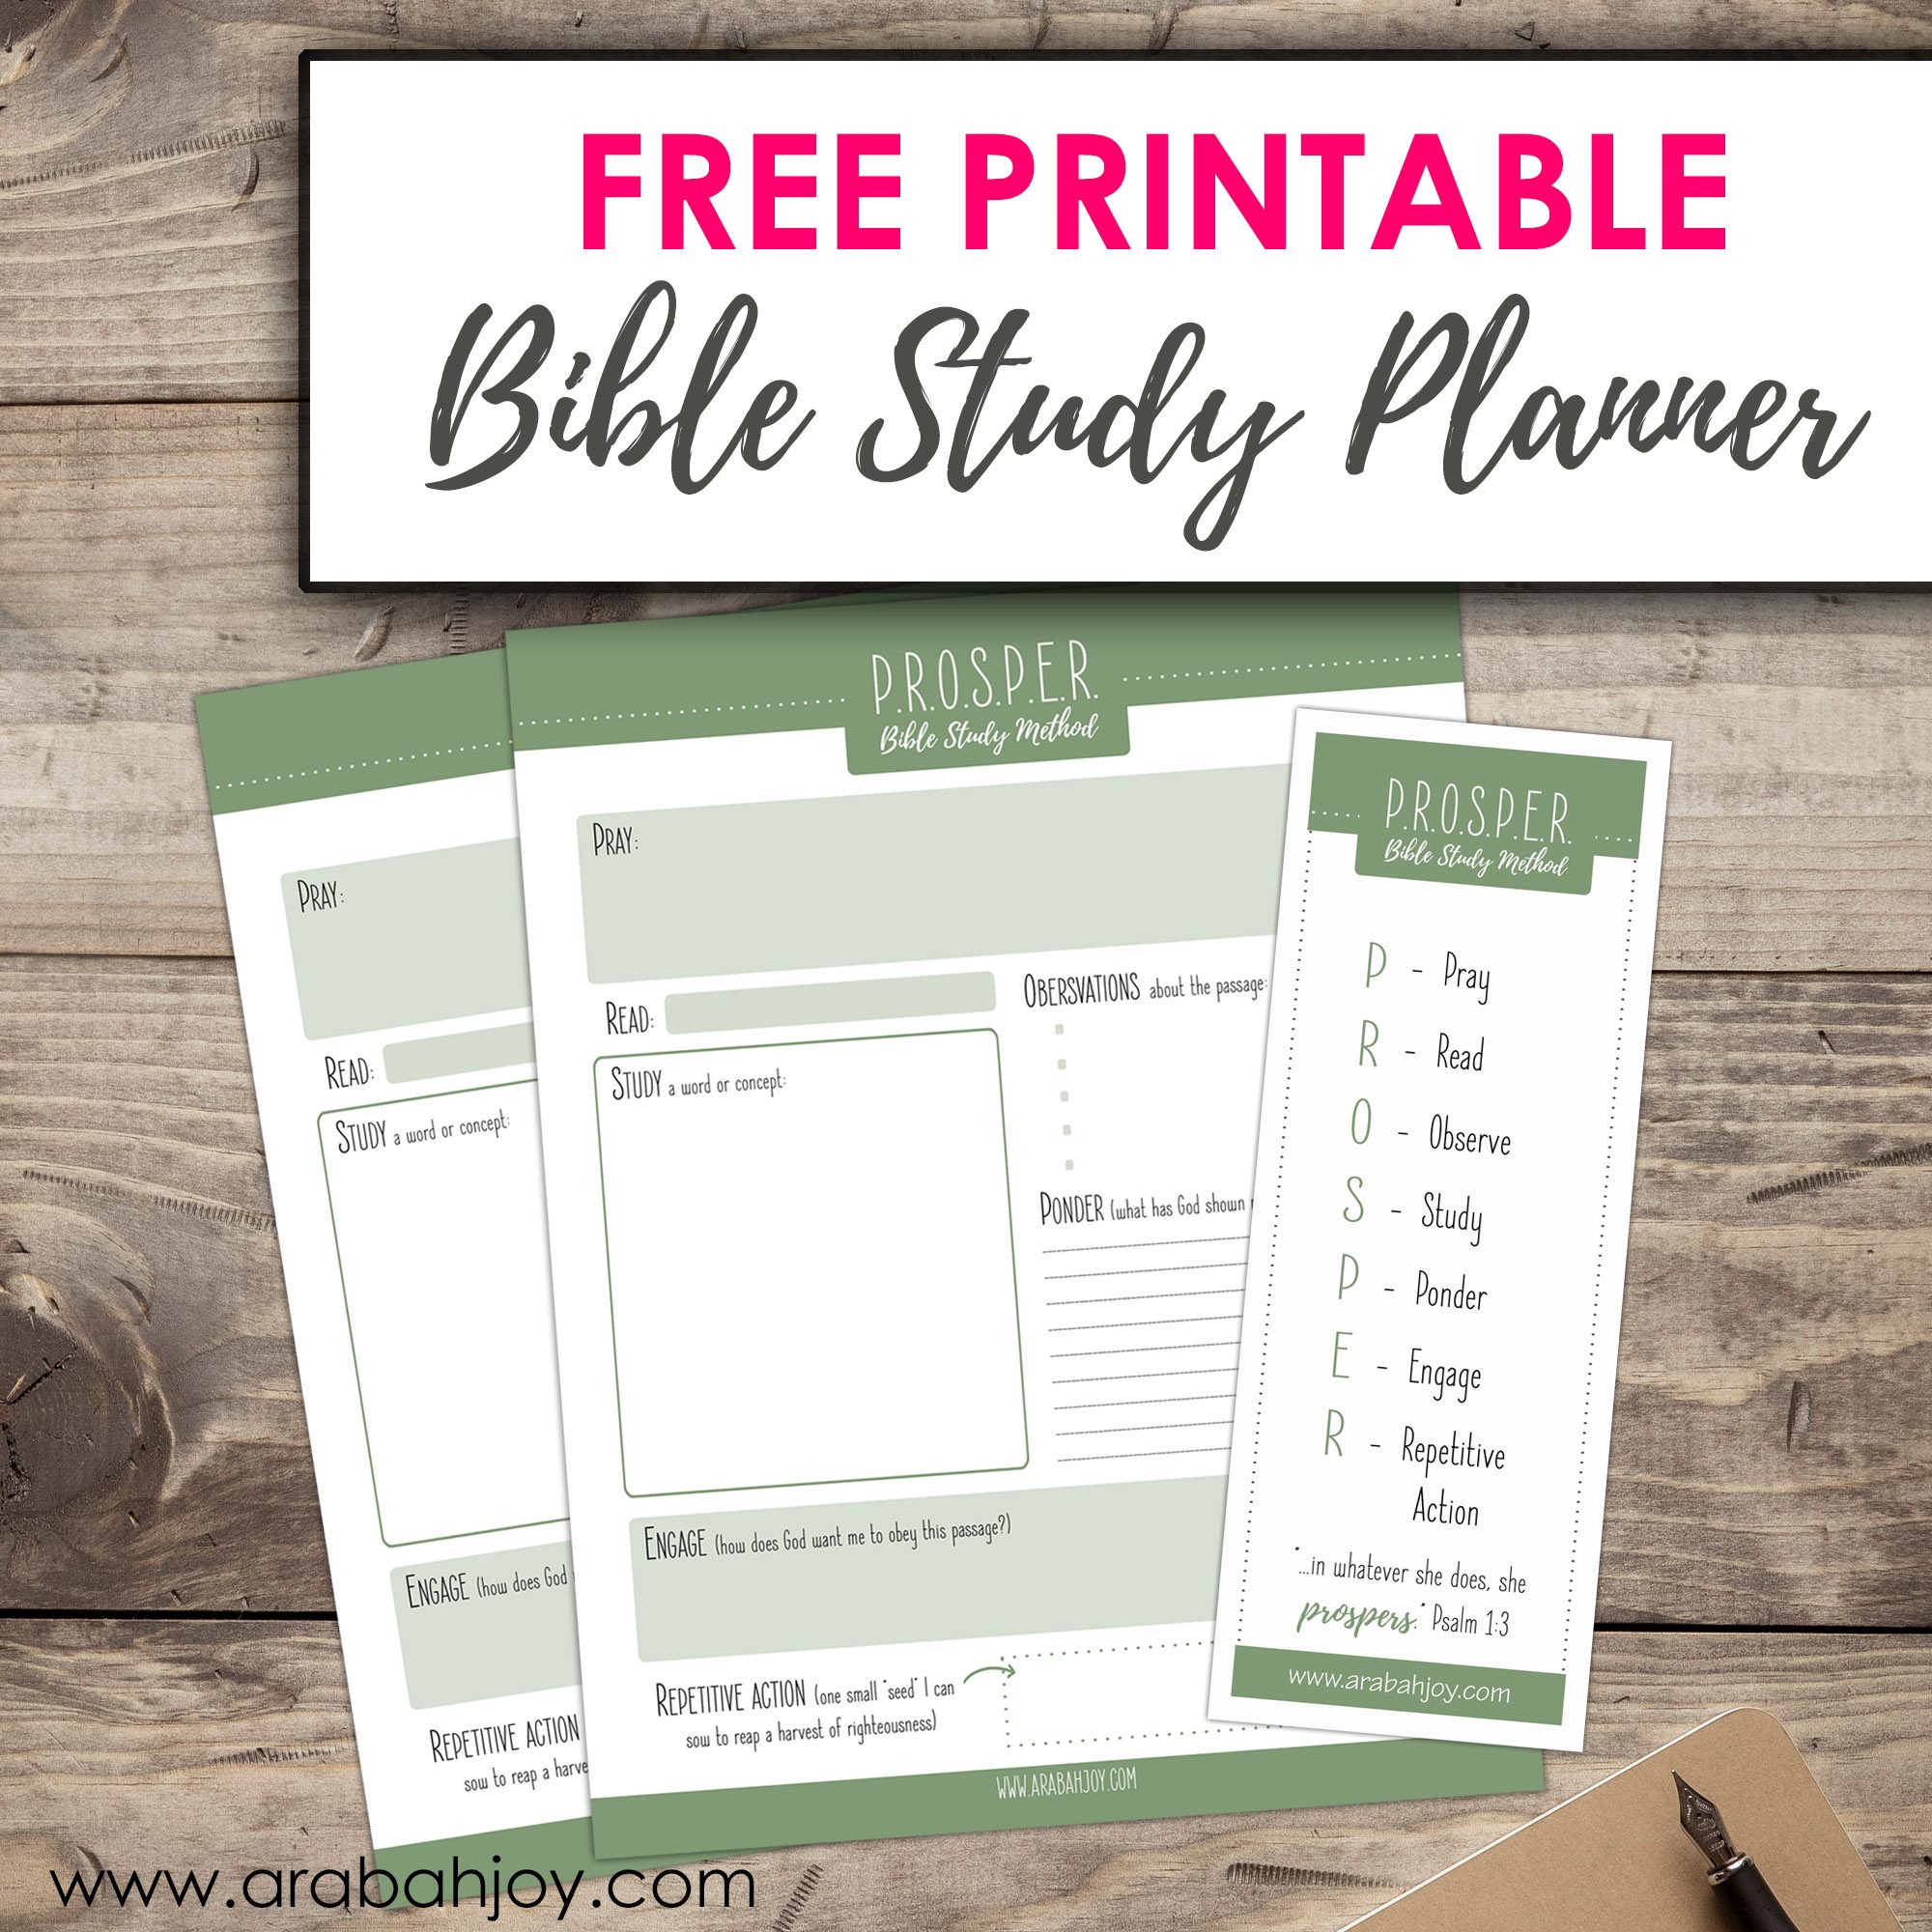 Free Bible study printable sheets